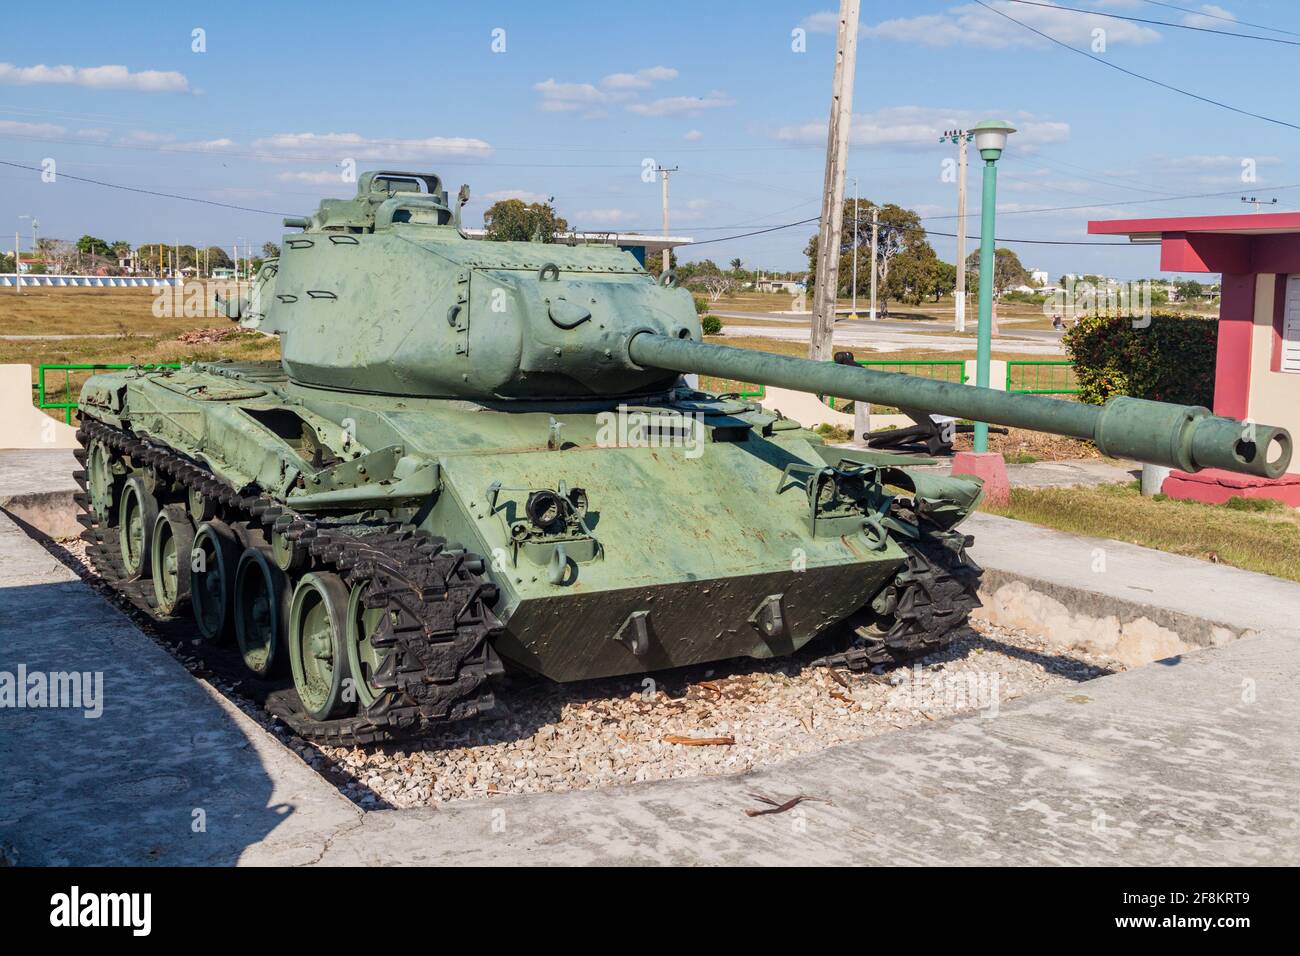 PLAYA GIRON, KUBA - 14. FEB 2016: Panzer in einem rmuseum, das der gescheiterten Schweinebucht-Invasion 1961 im Dorf Playa Giron, Kuba, gewidmet ist. Stockfoto